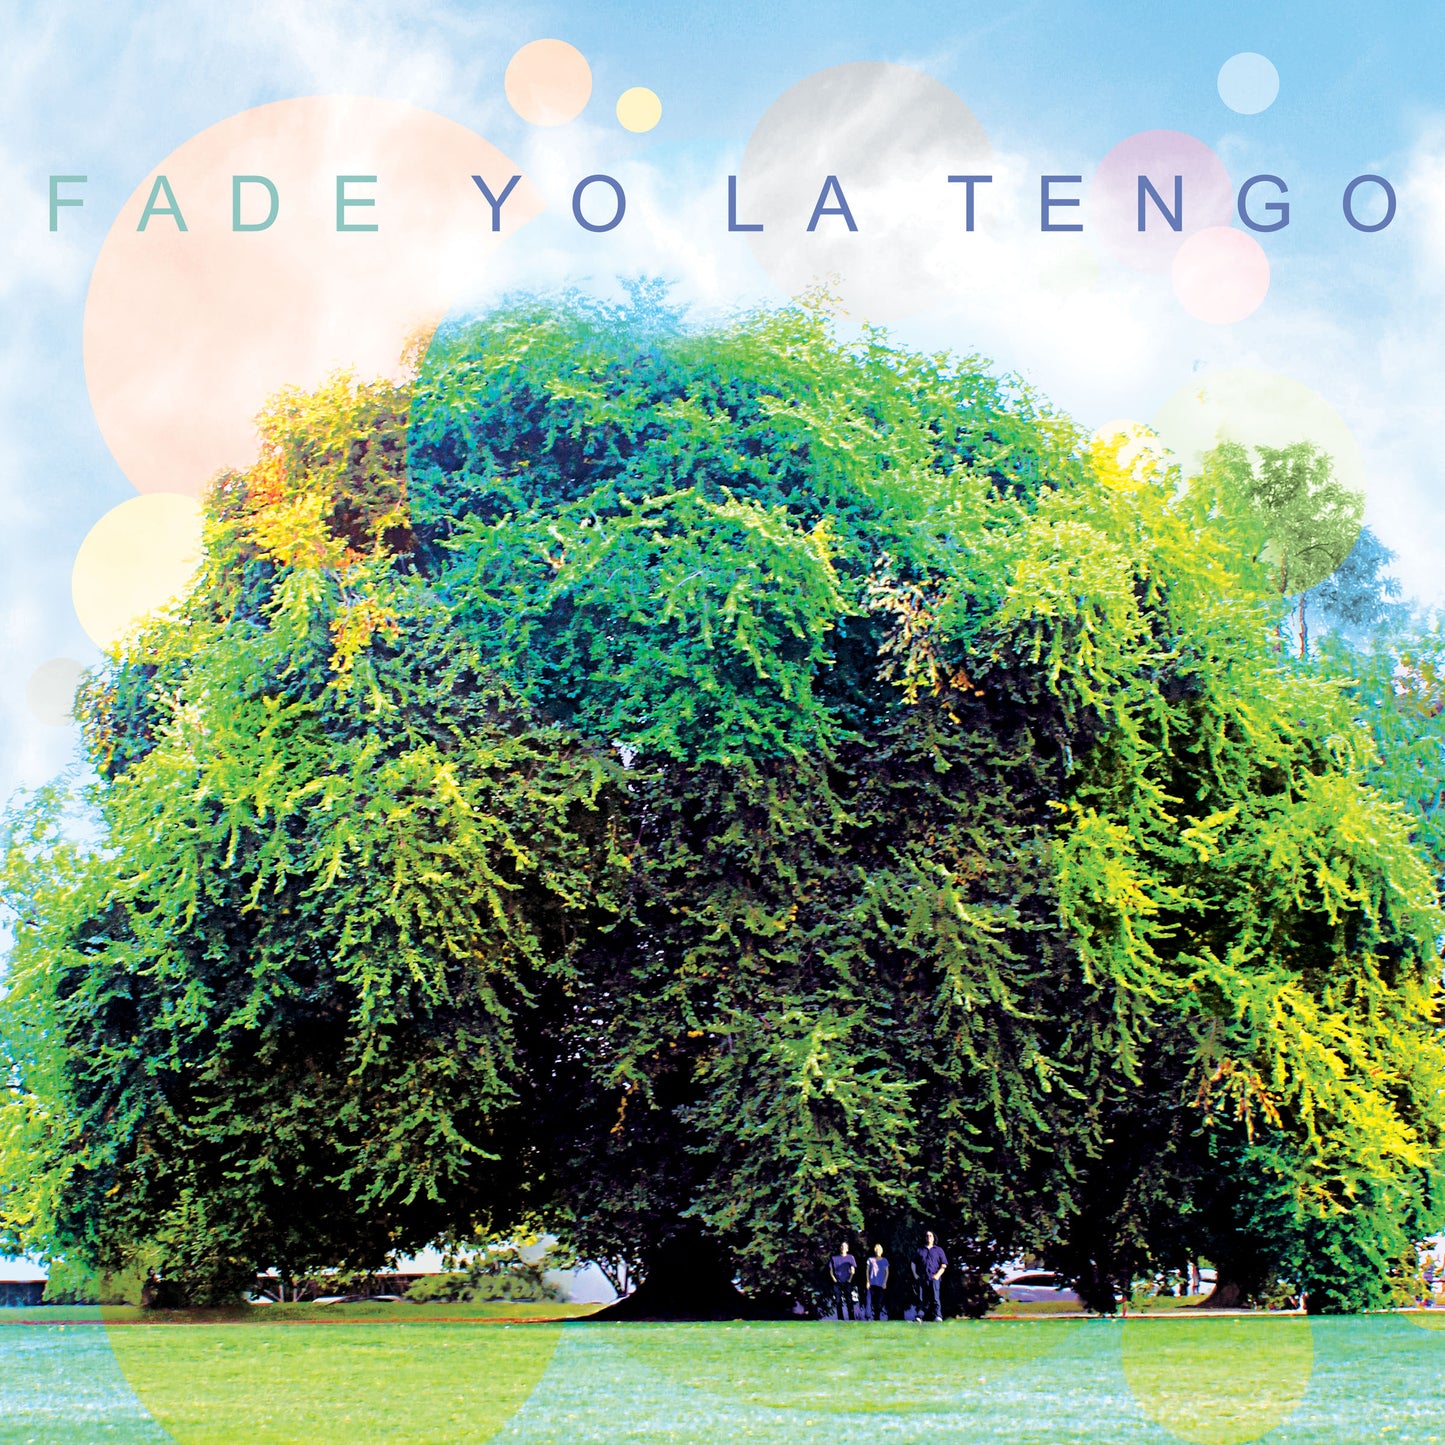 Yo La Tengo - Fade (Black Vinyl)